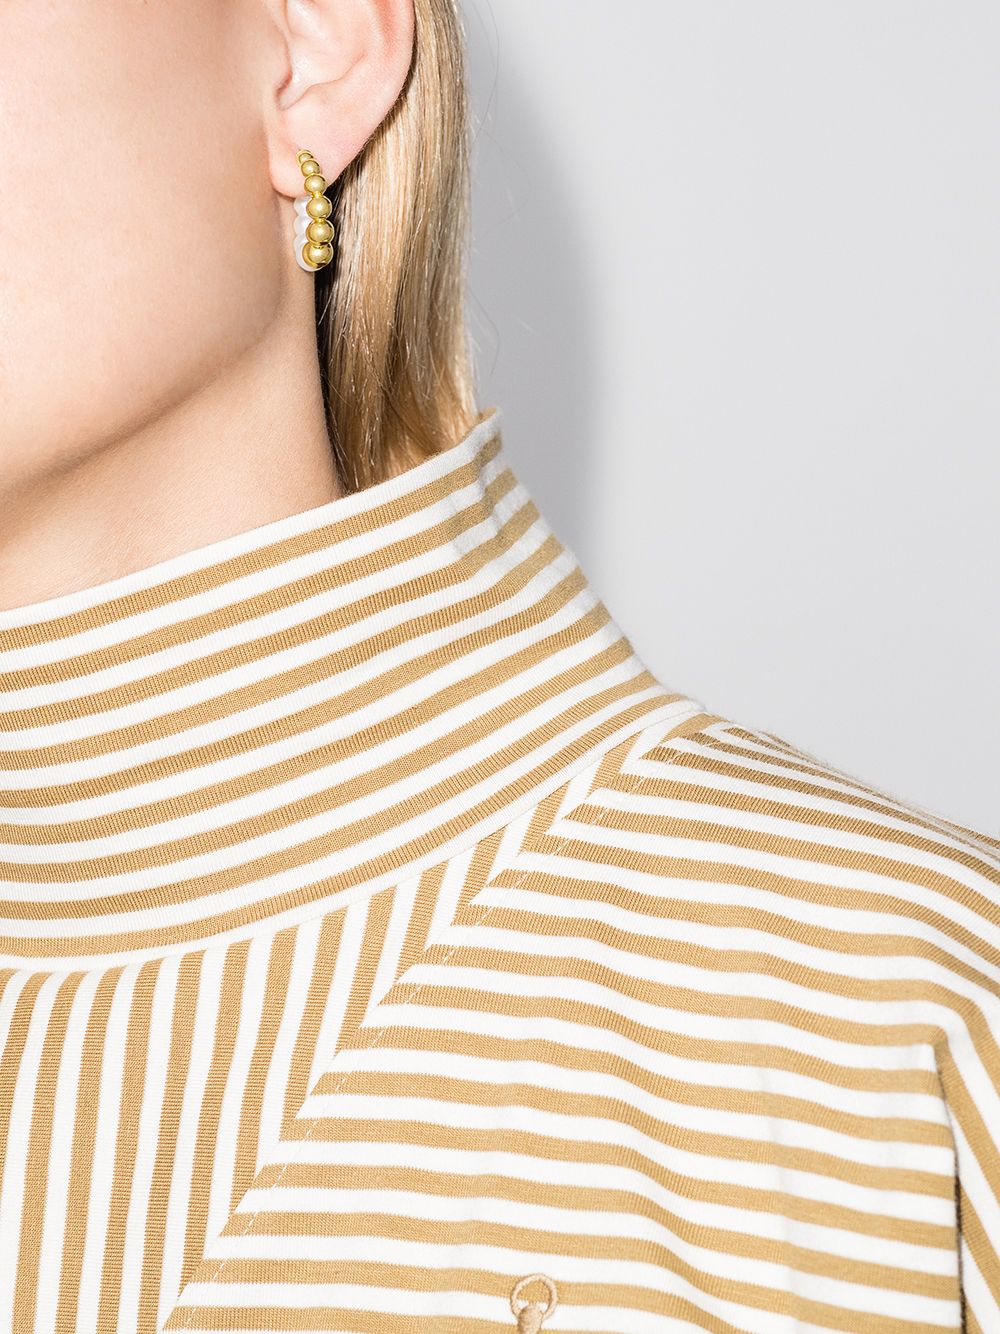 фото Yvonne léon золотые серьги-кольца с жемчугом